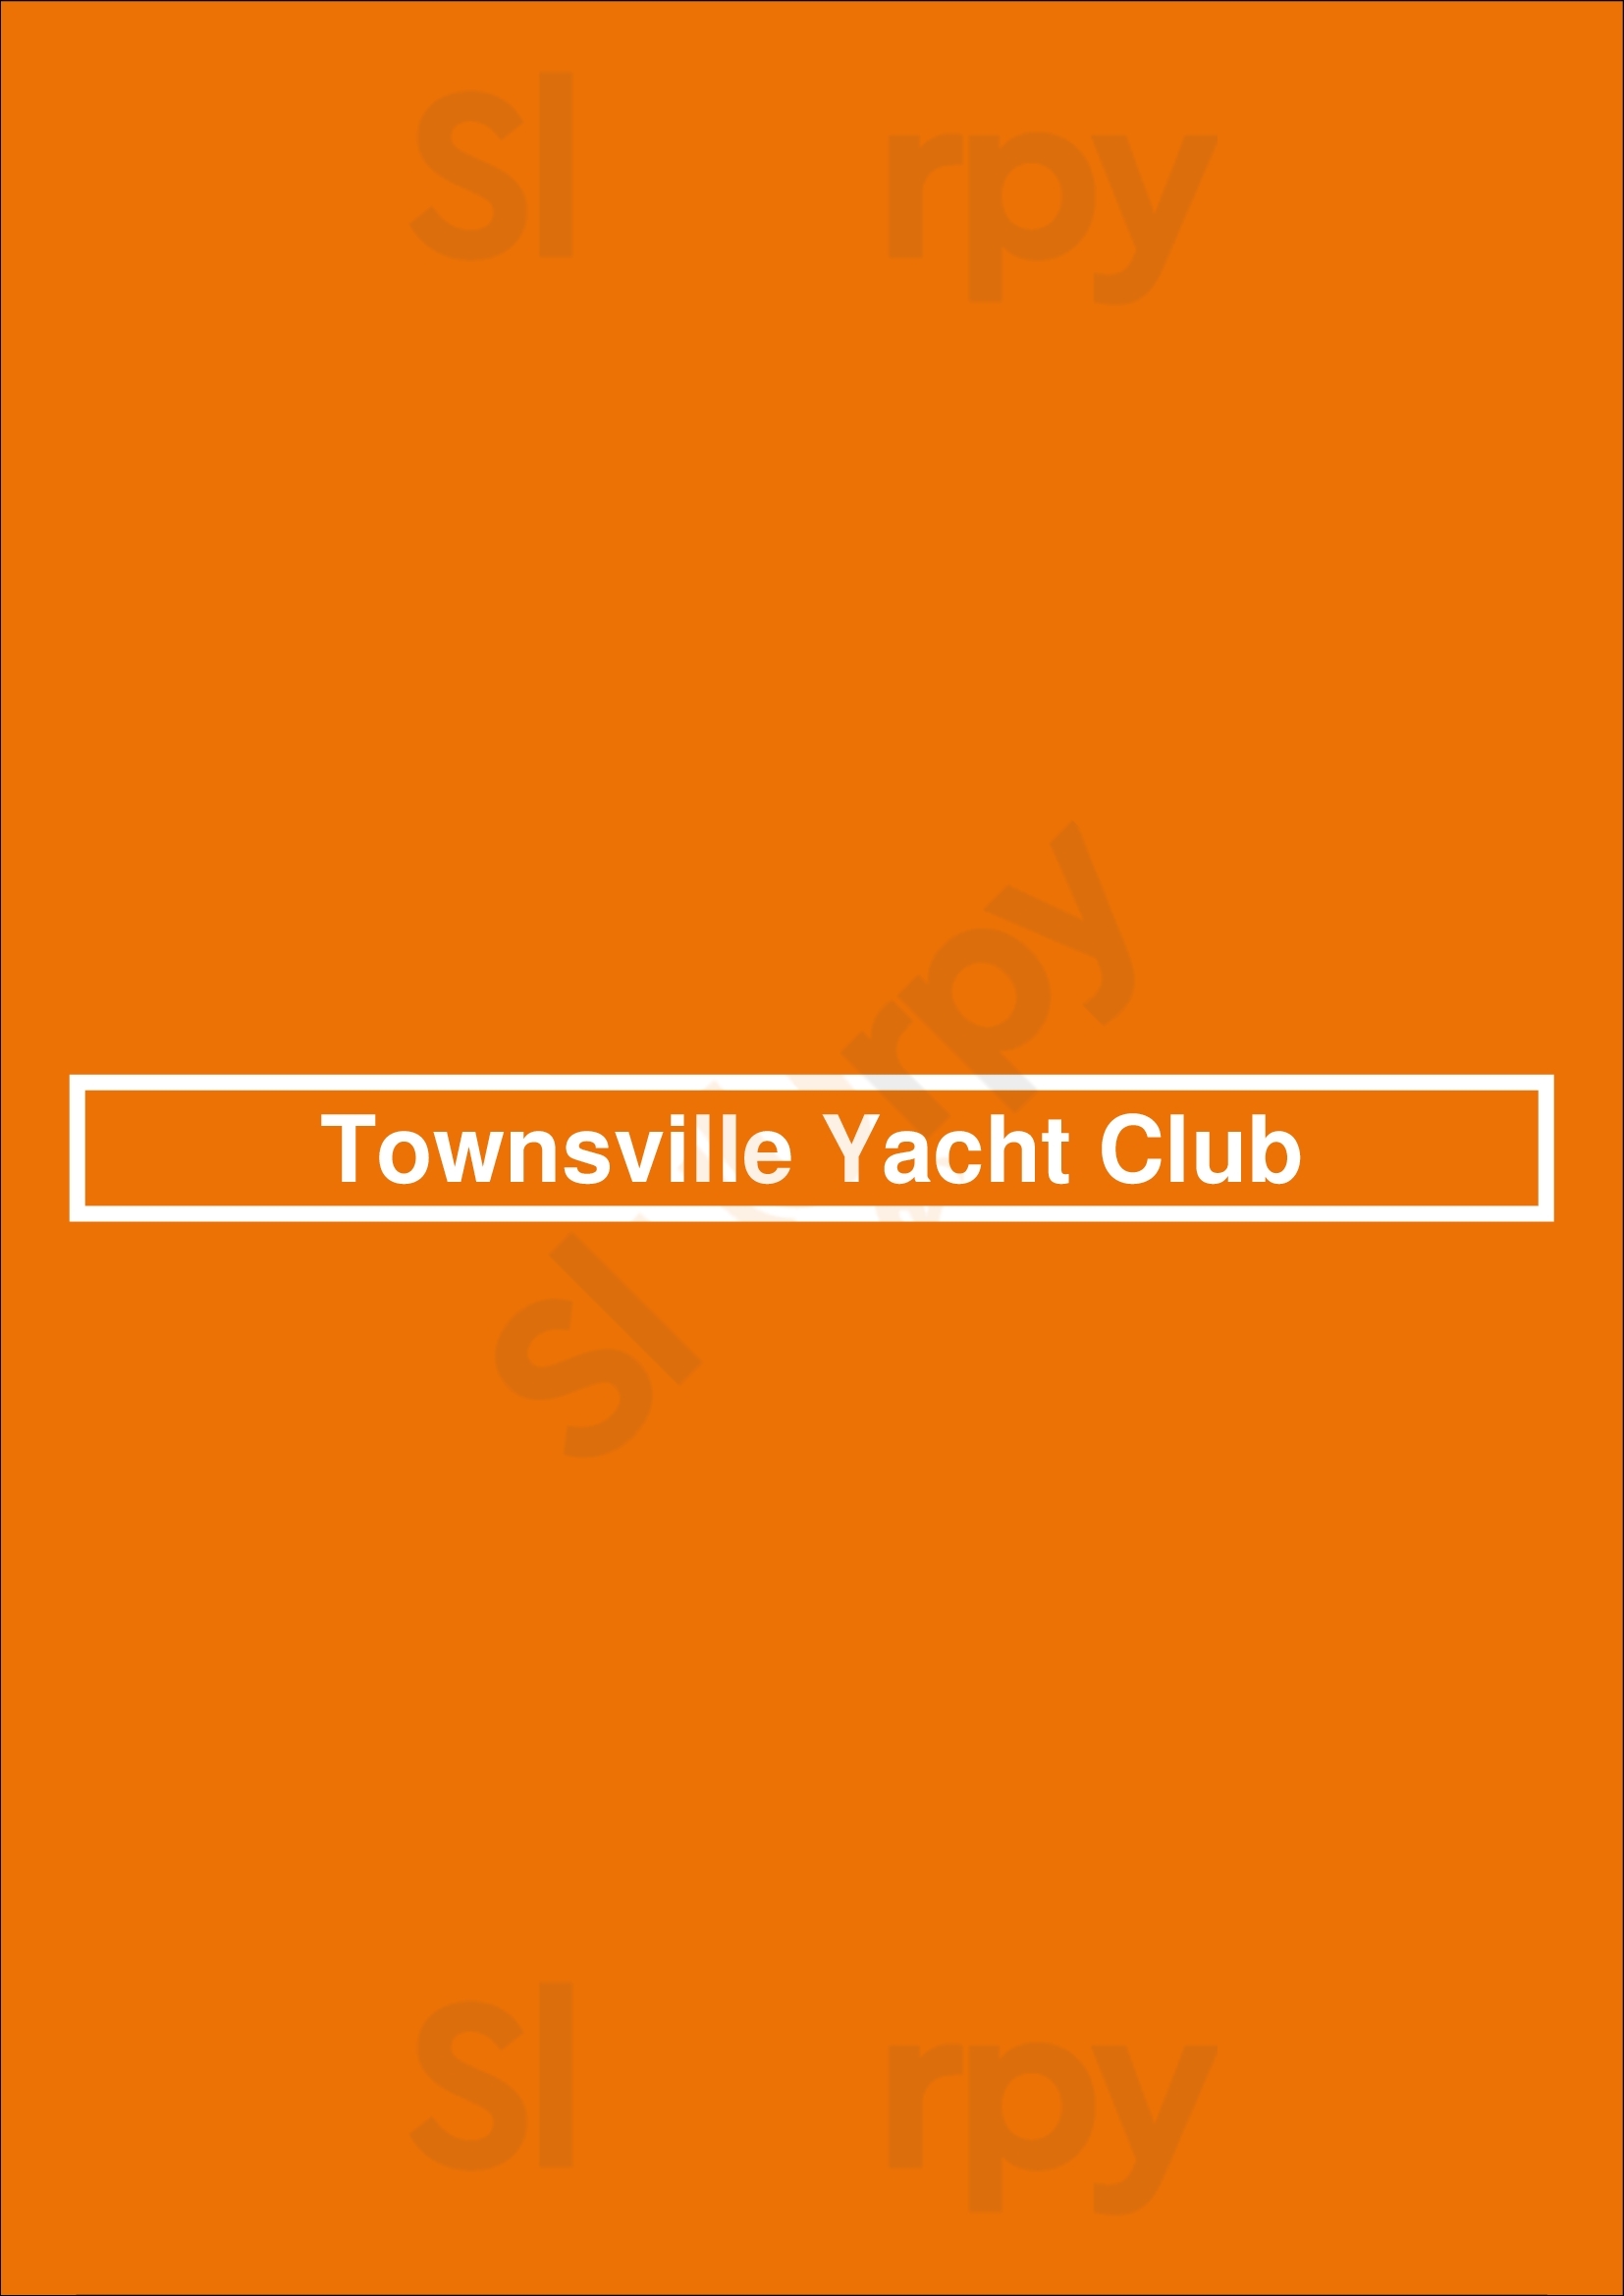 Townsville Yacht Club Townsville Menu - 1